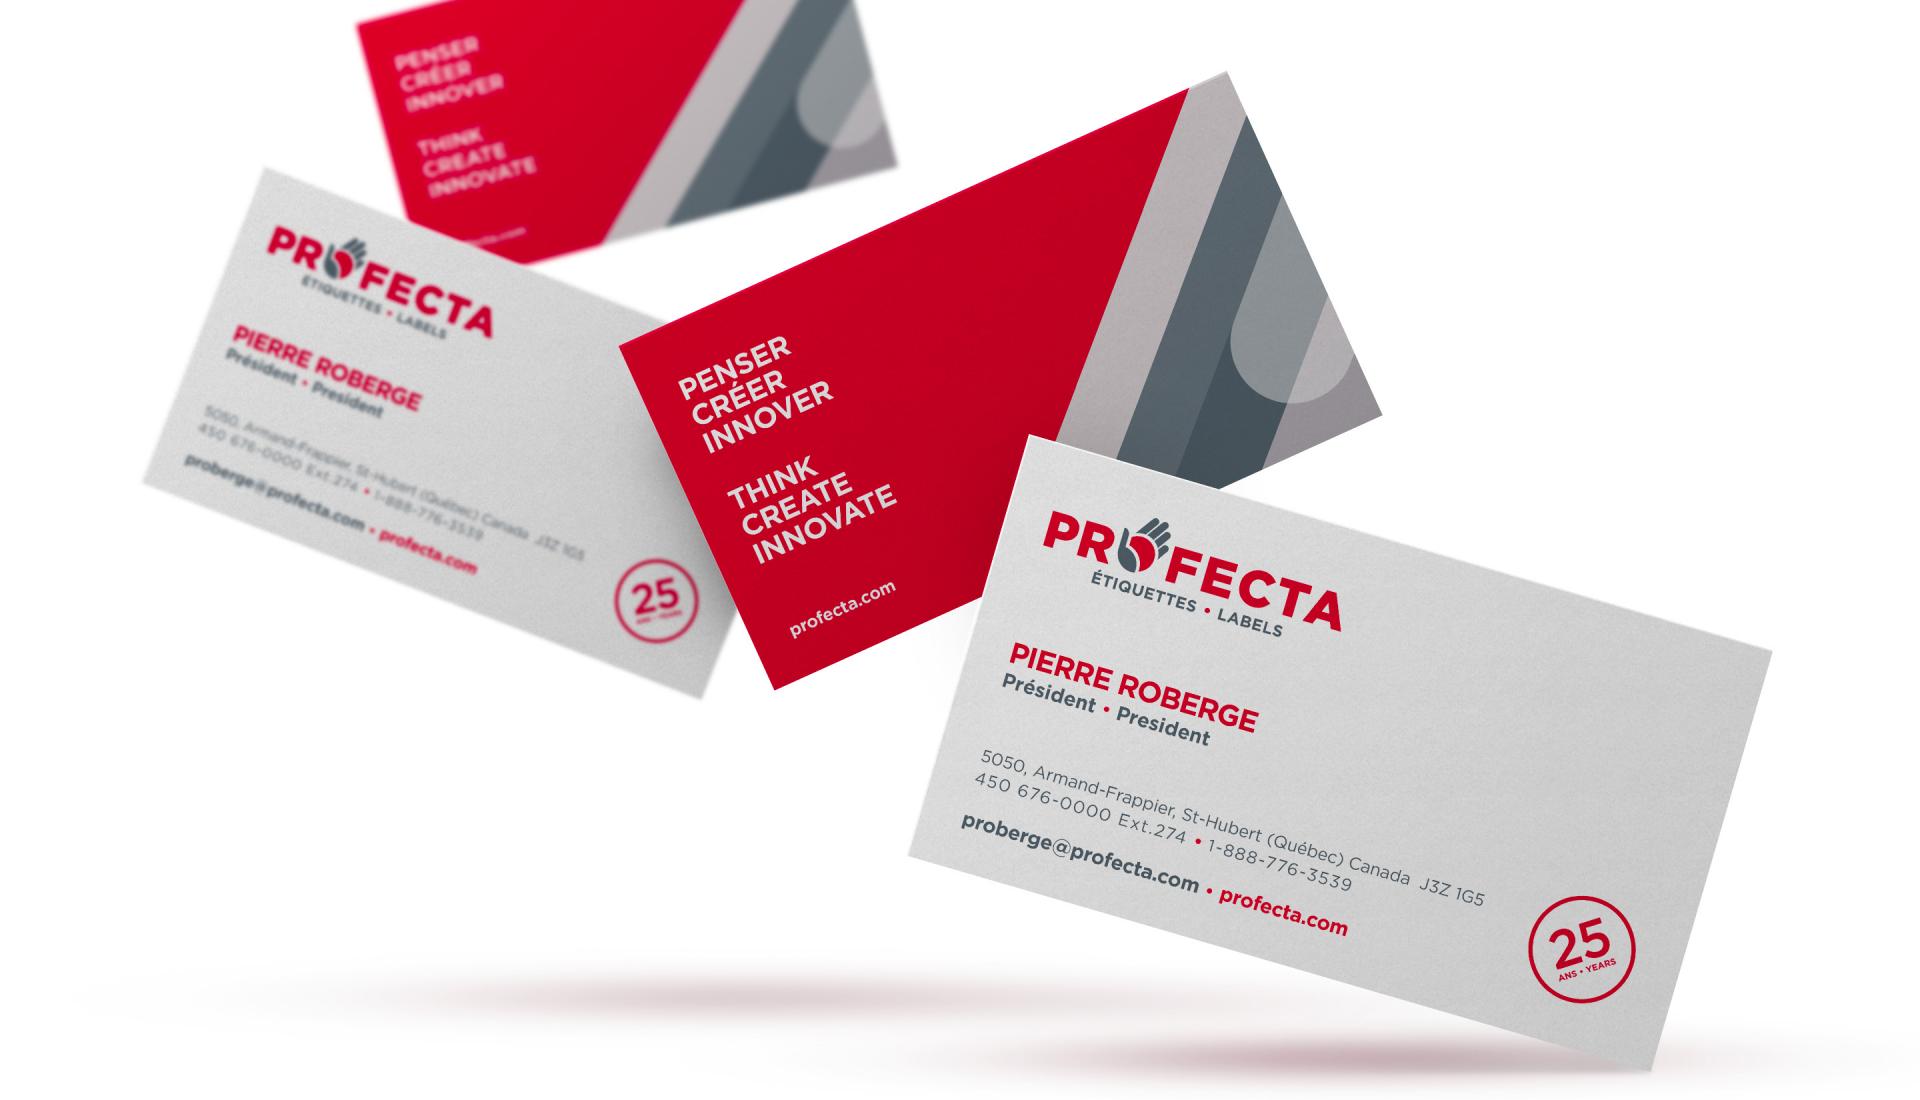 Profecta - Business Cards